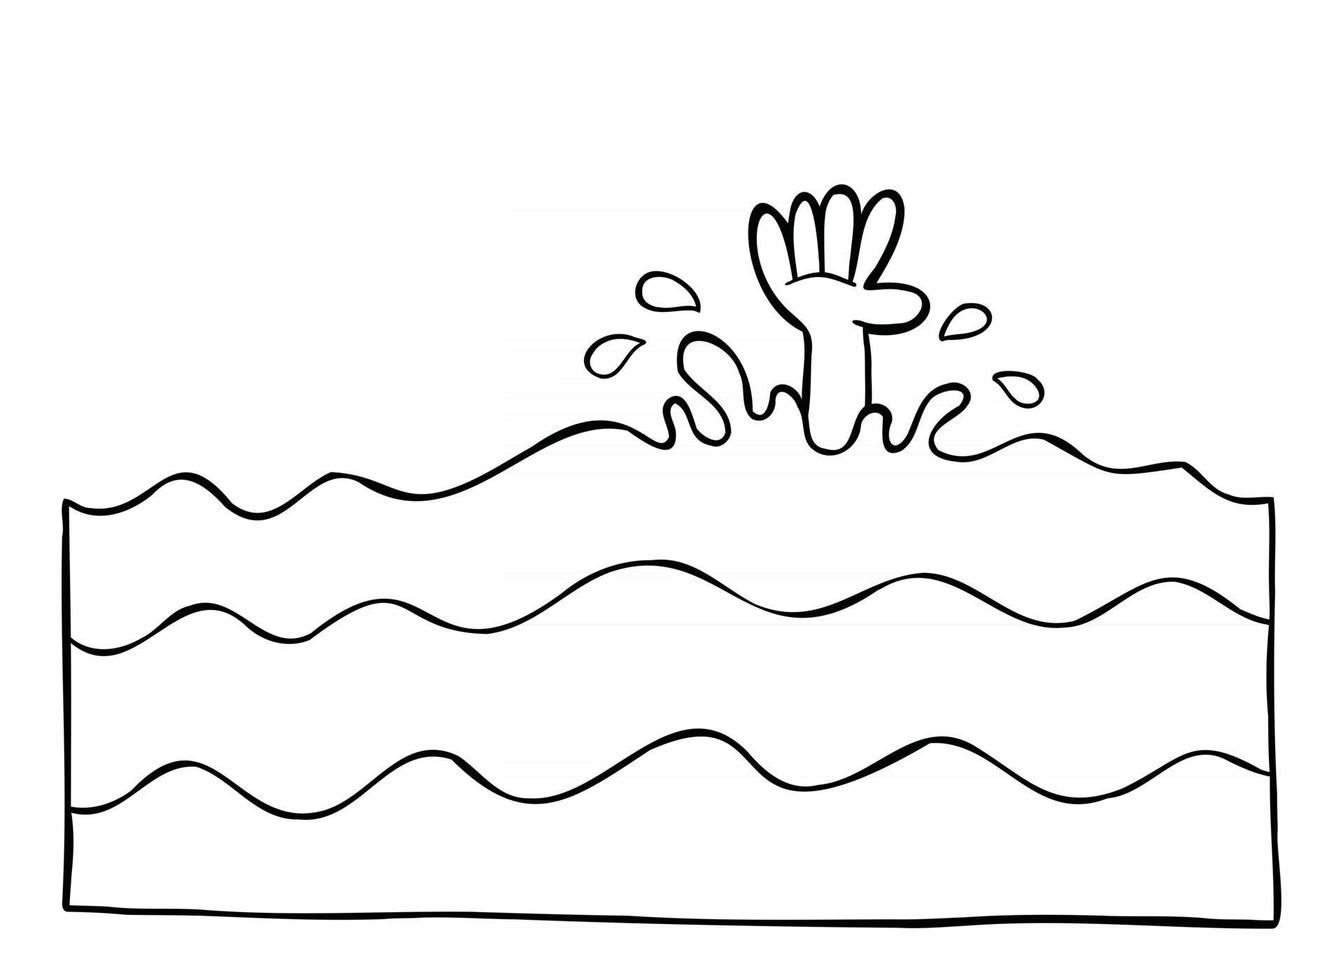 fumetto illustrazione vettoriale dell'uomo e la sua mano che annega nel mare